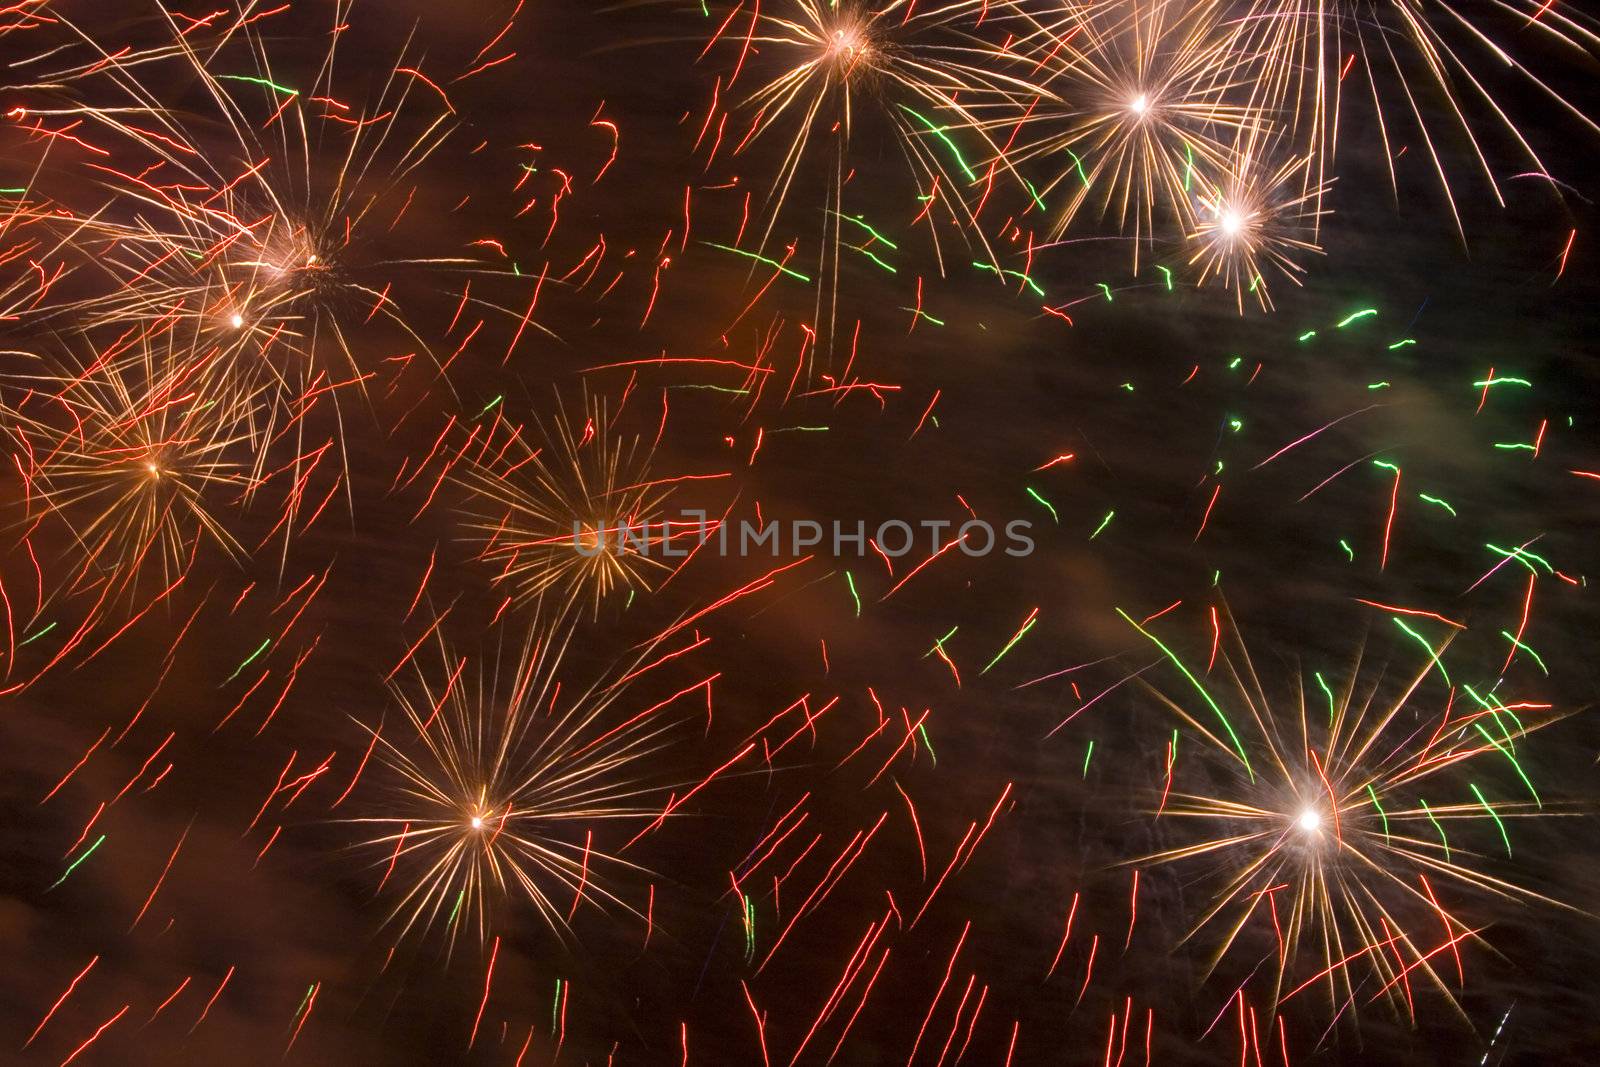 Fireworks 61 by Dan70